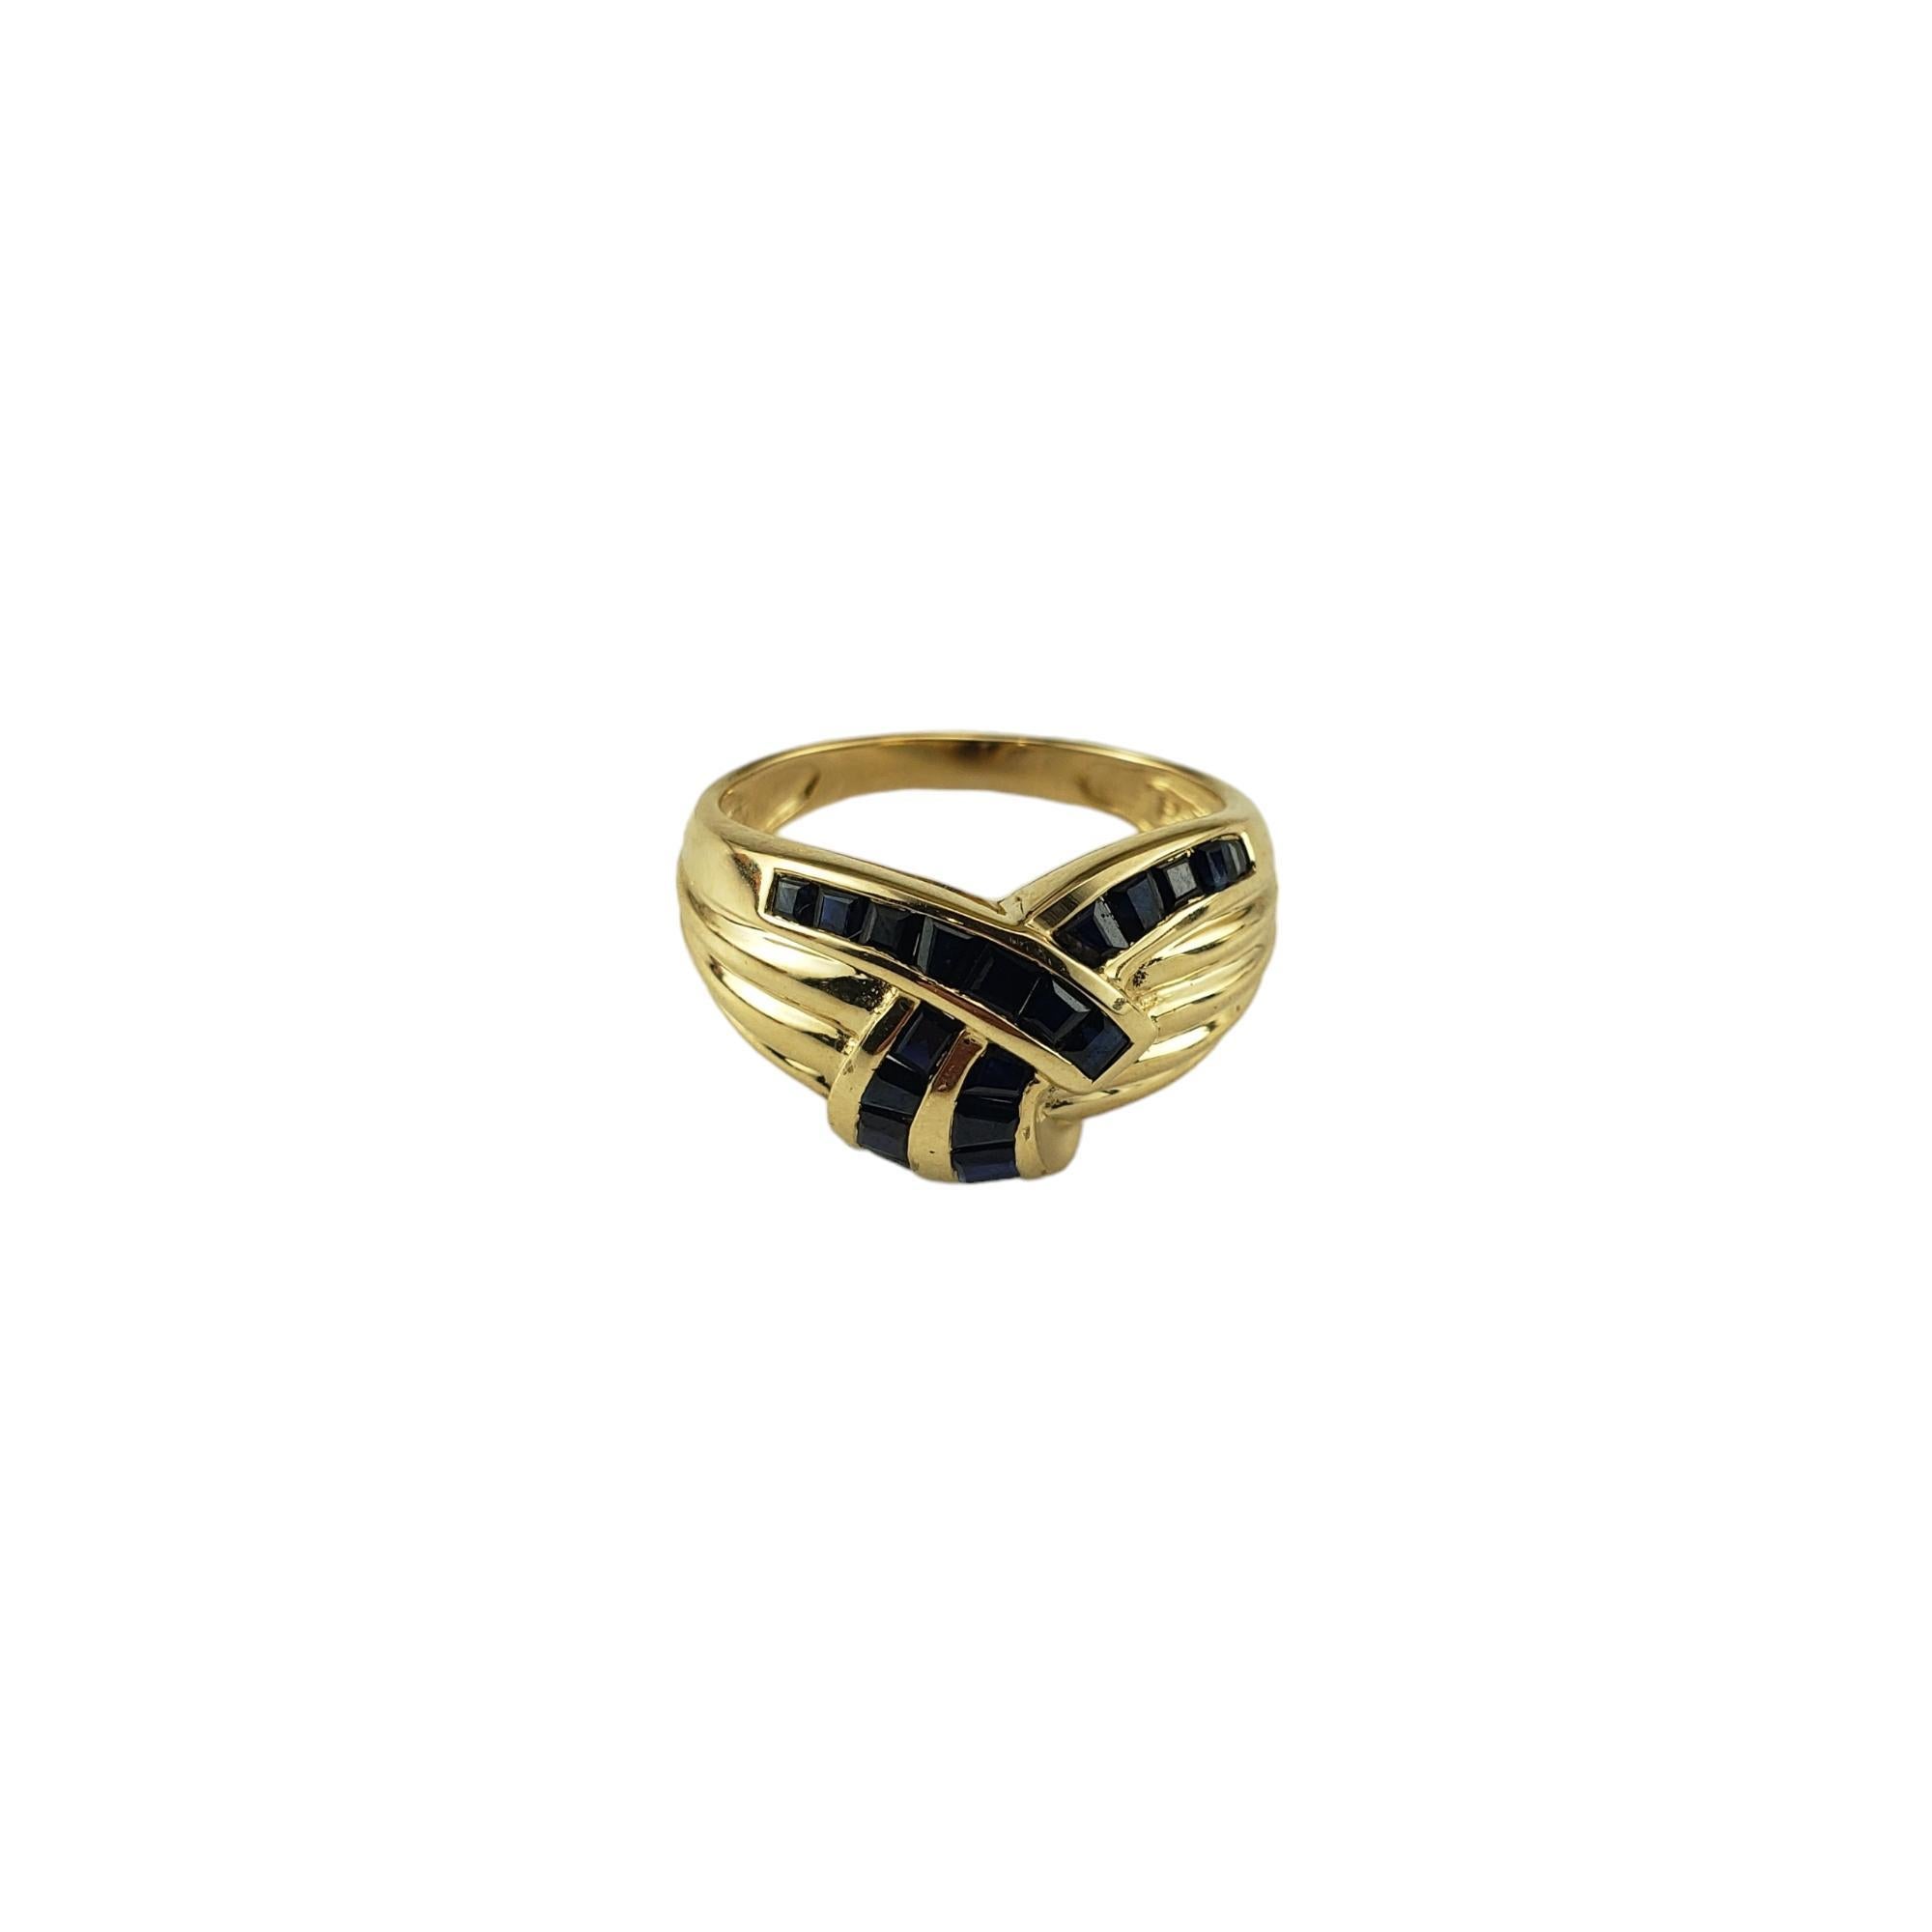 Vintage 14 Karat Gelbgold und Saphir Ring Größe 5,25

Dieser elegante Ring besteht aus 21 natürlichen blauen Saphiren im Baguetteschliff, die in wunderschön detailliertes 14-karätiges Gelbgold gefasst sind. 

Breite: 11 mm.  Schaft: 2